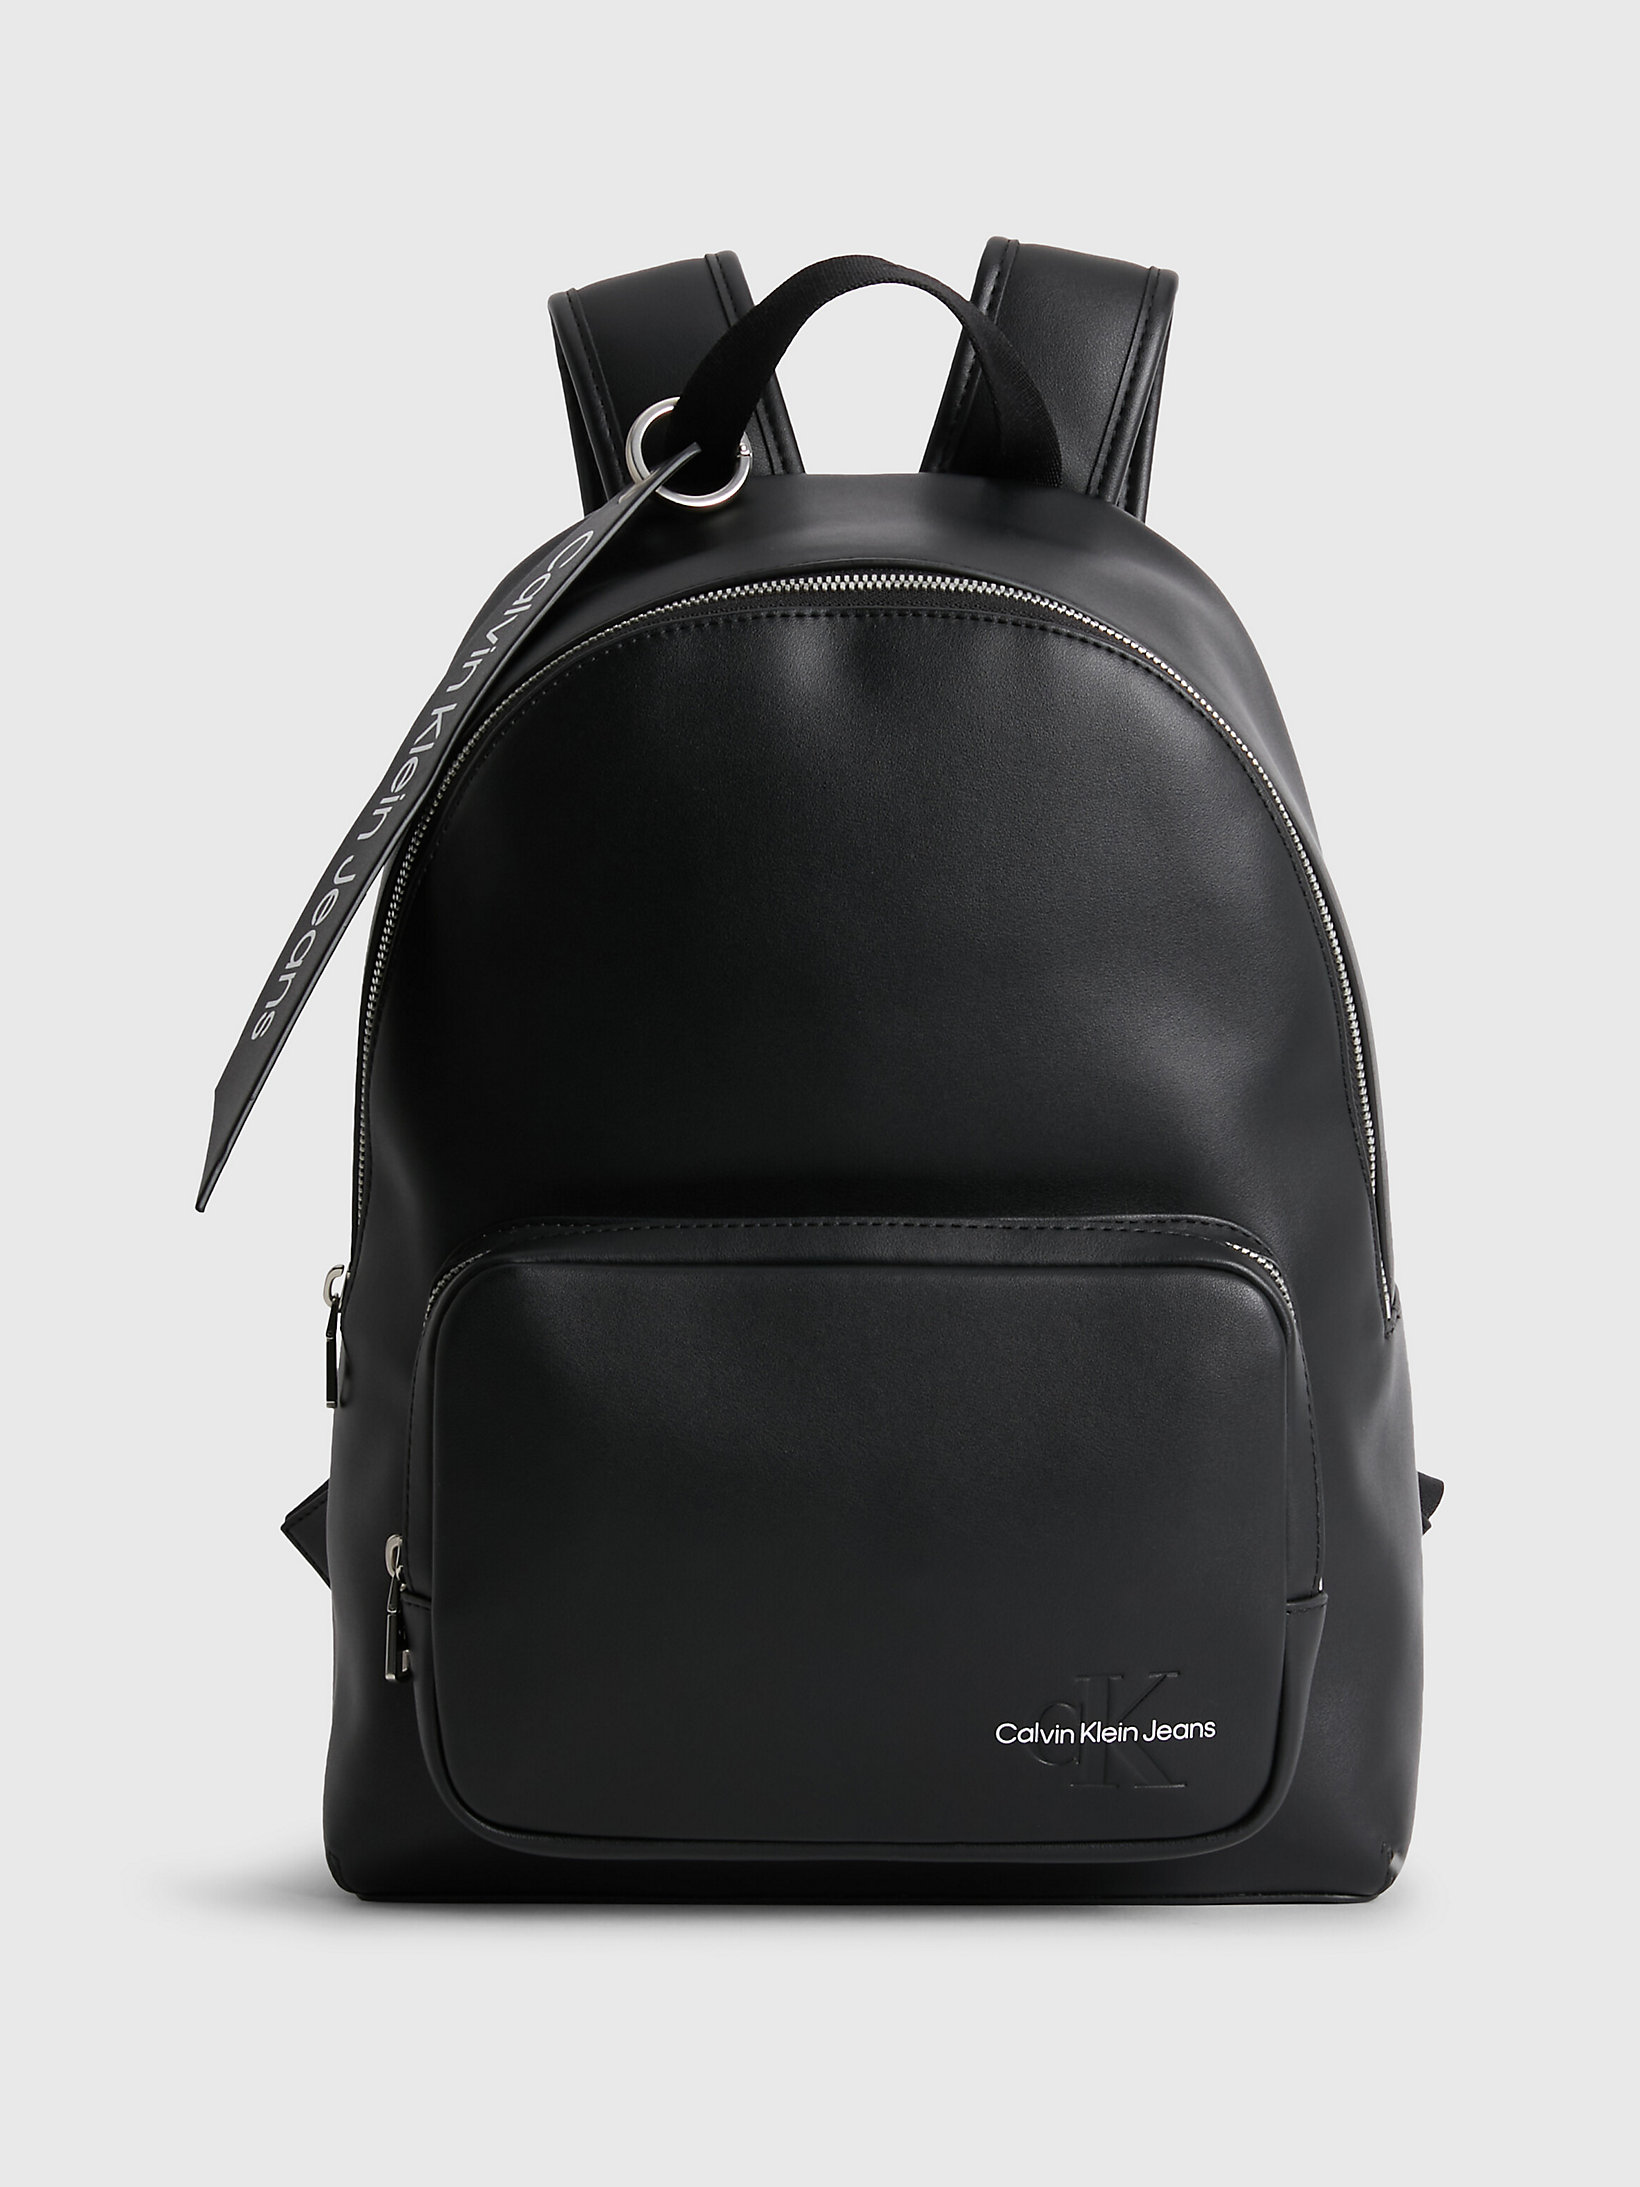 Top 55+ imagen calvin klein backpack black